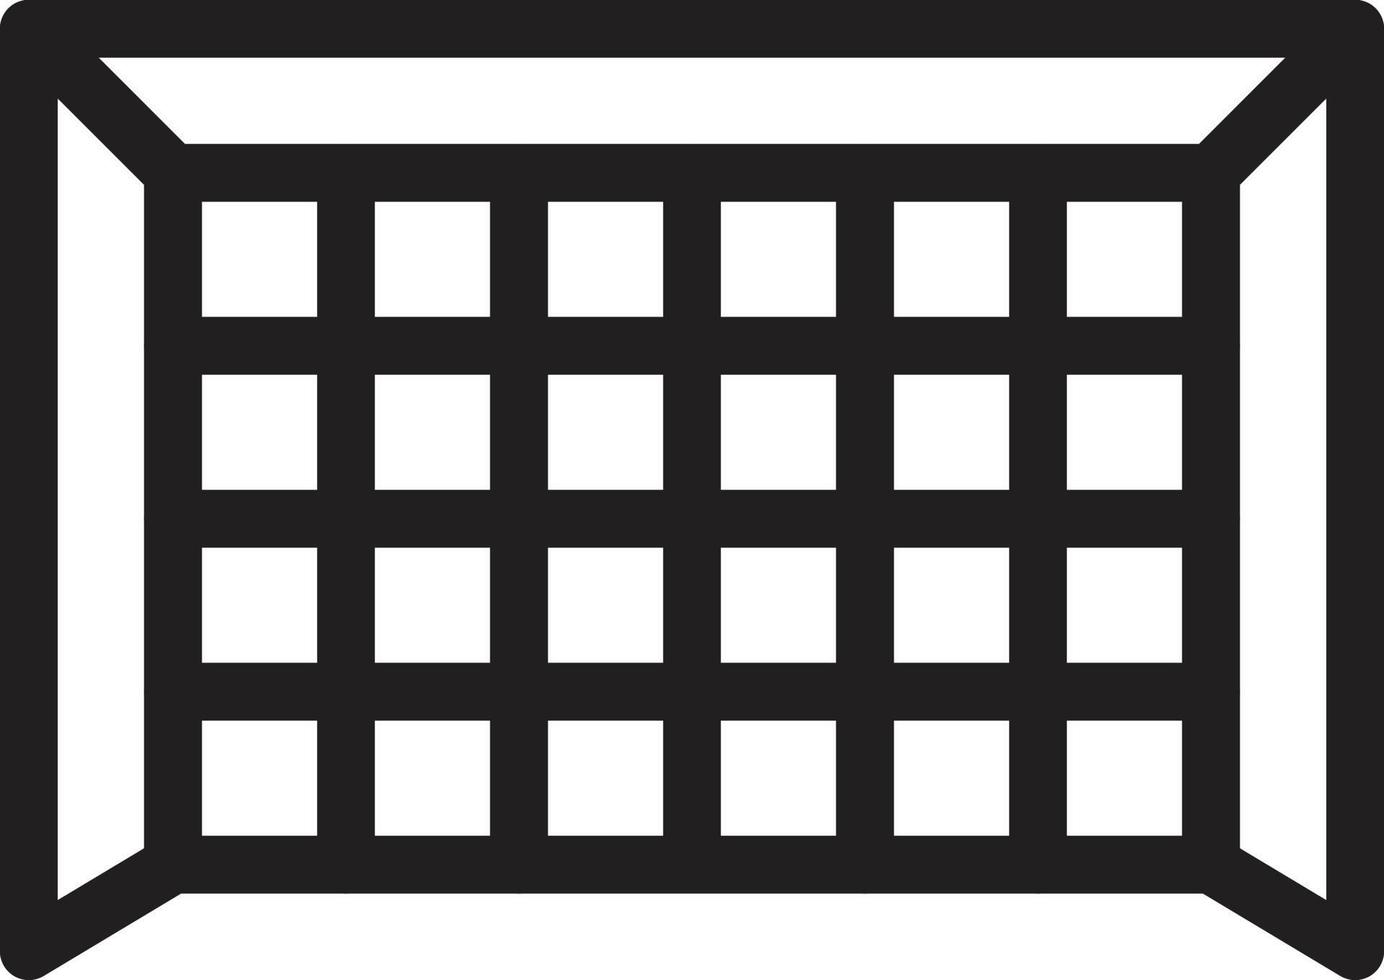 zielvektorillustration auf einem hintergrund. hochwertige symbole. vektorikonen für konzept und grafikdesign. vektor